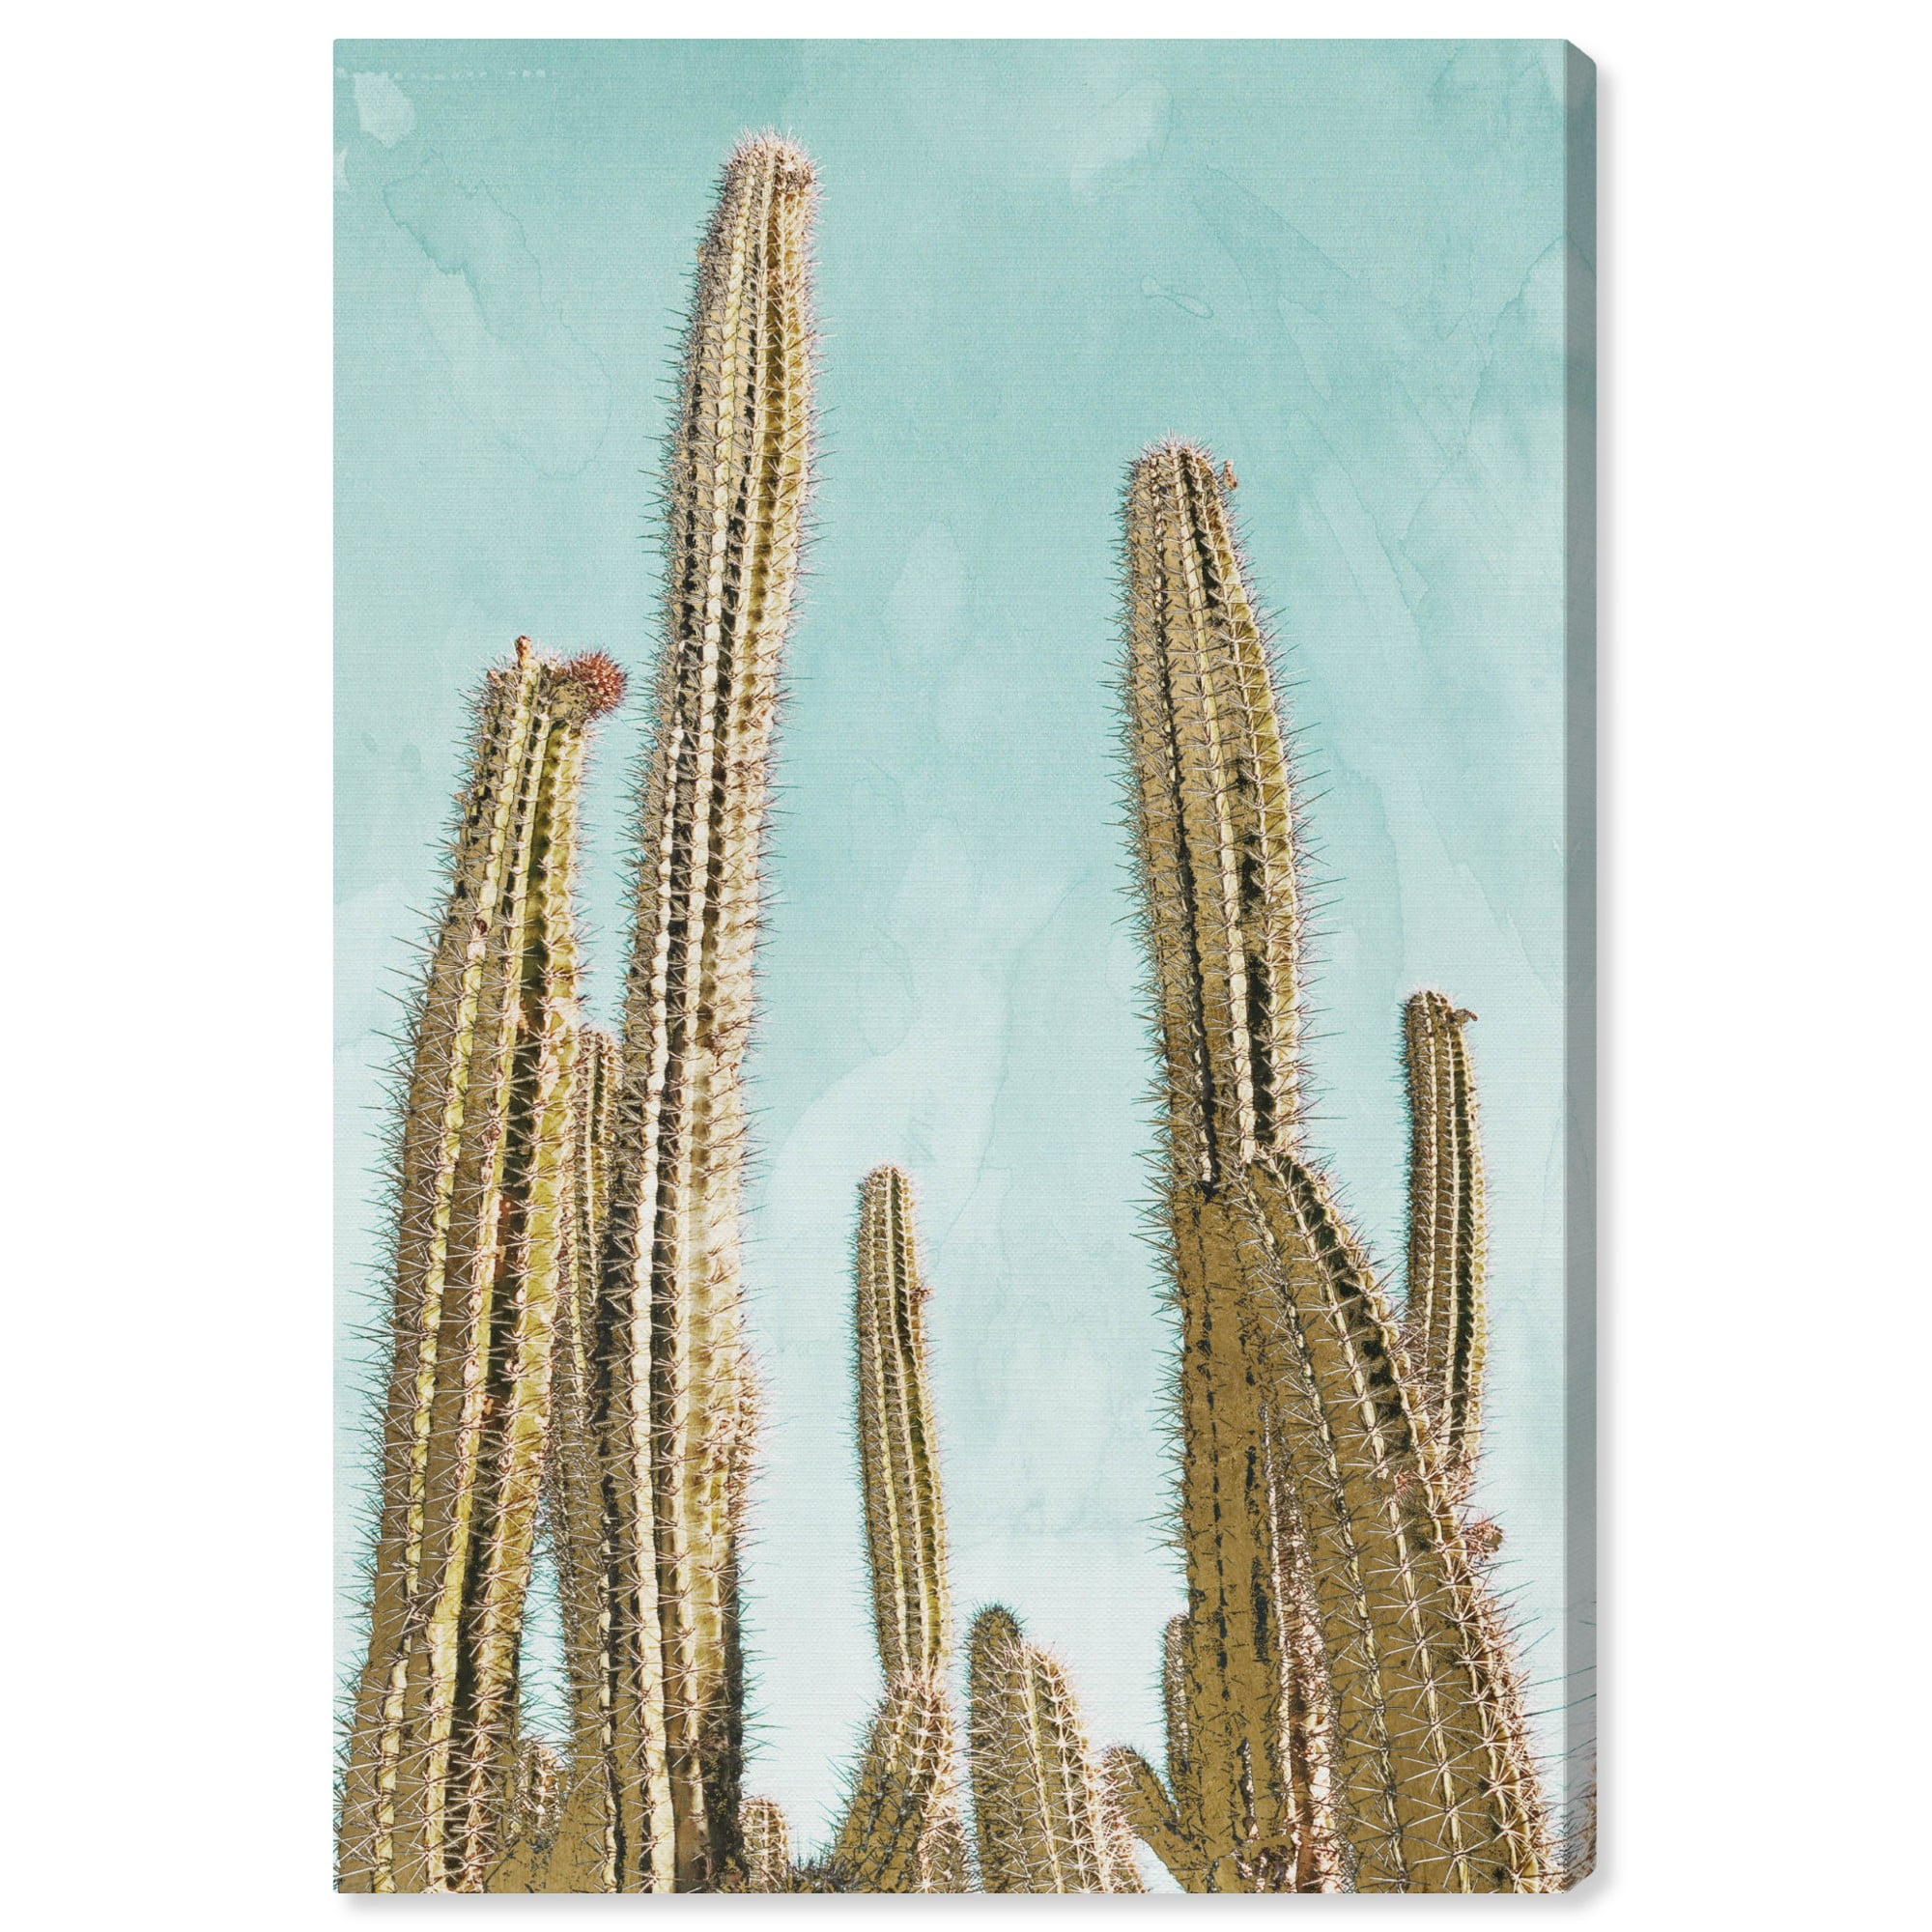 Set of 3 Desert cactus photos nature photography 5x7 prints 